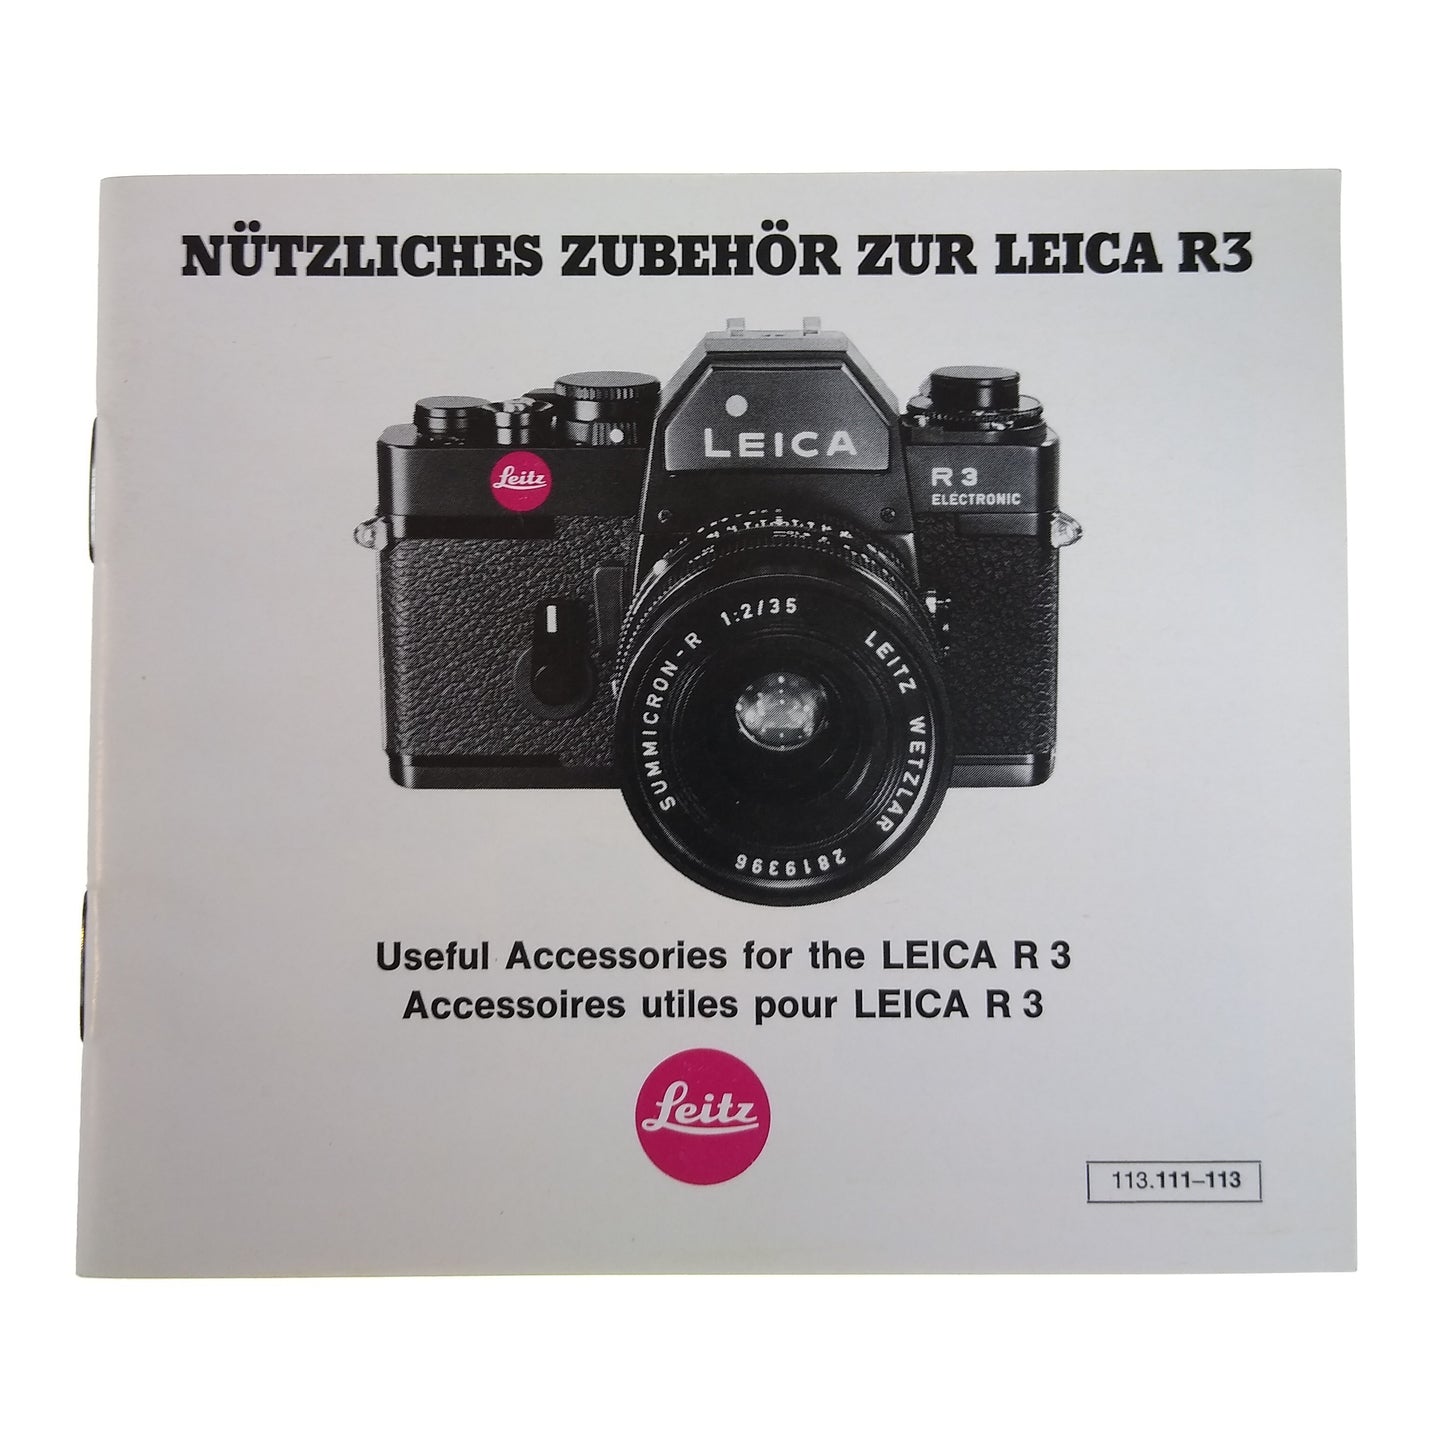 Leica R3 Accessories Brochure.